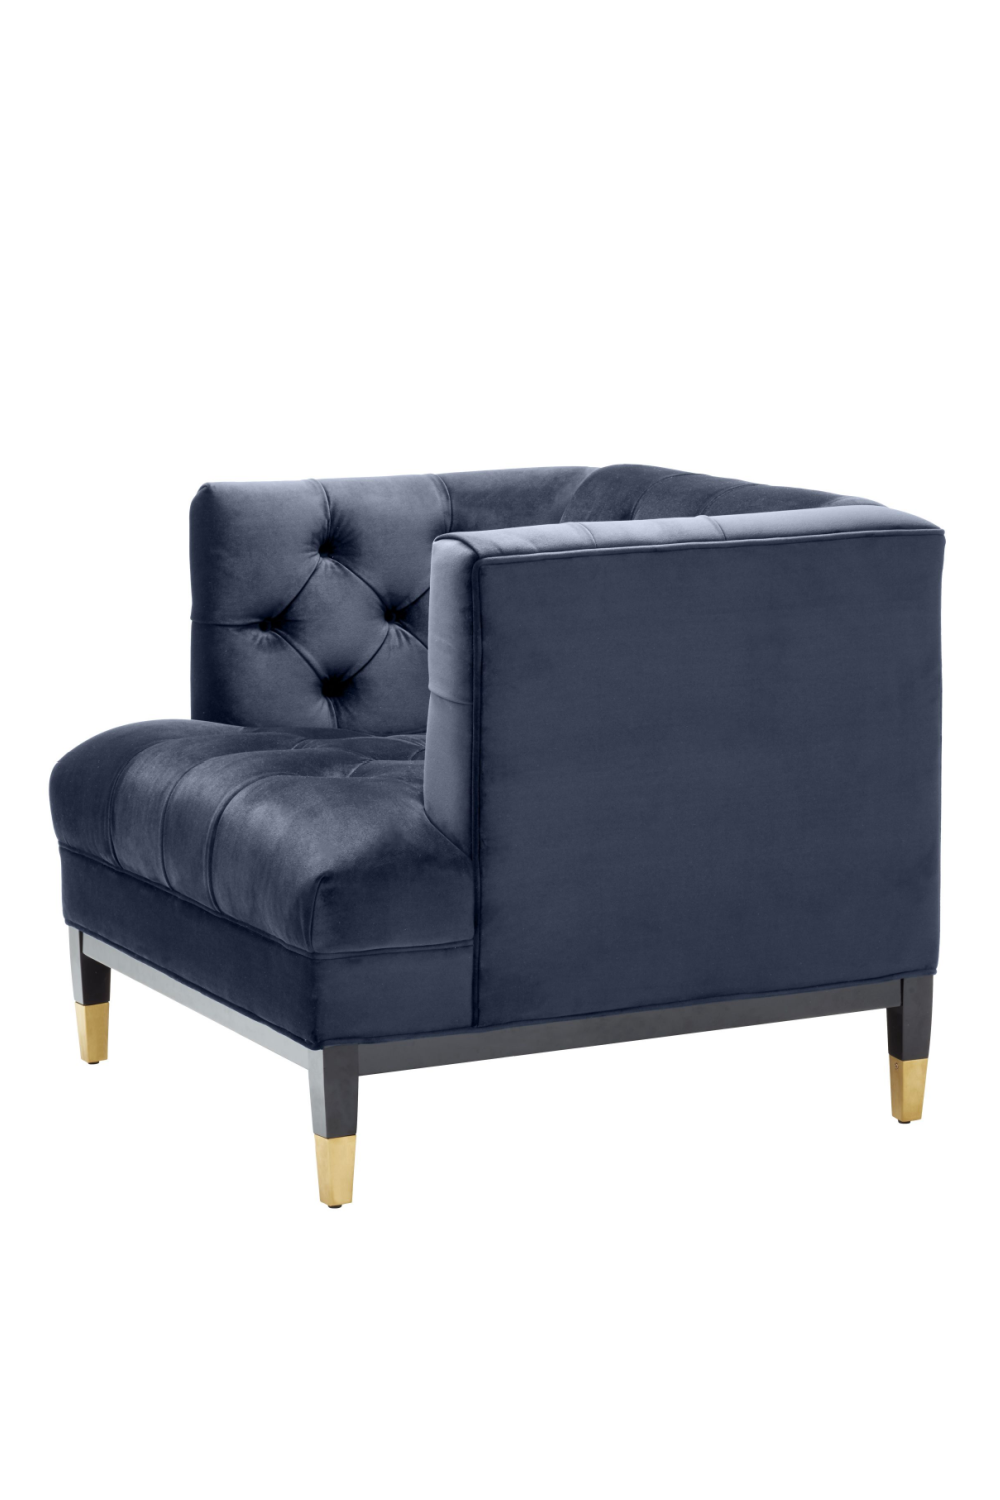 Blue Velvet Tufted Chair | Eichholtz Castelle | Oroa.com